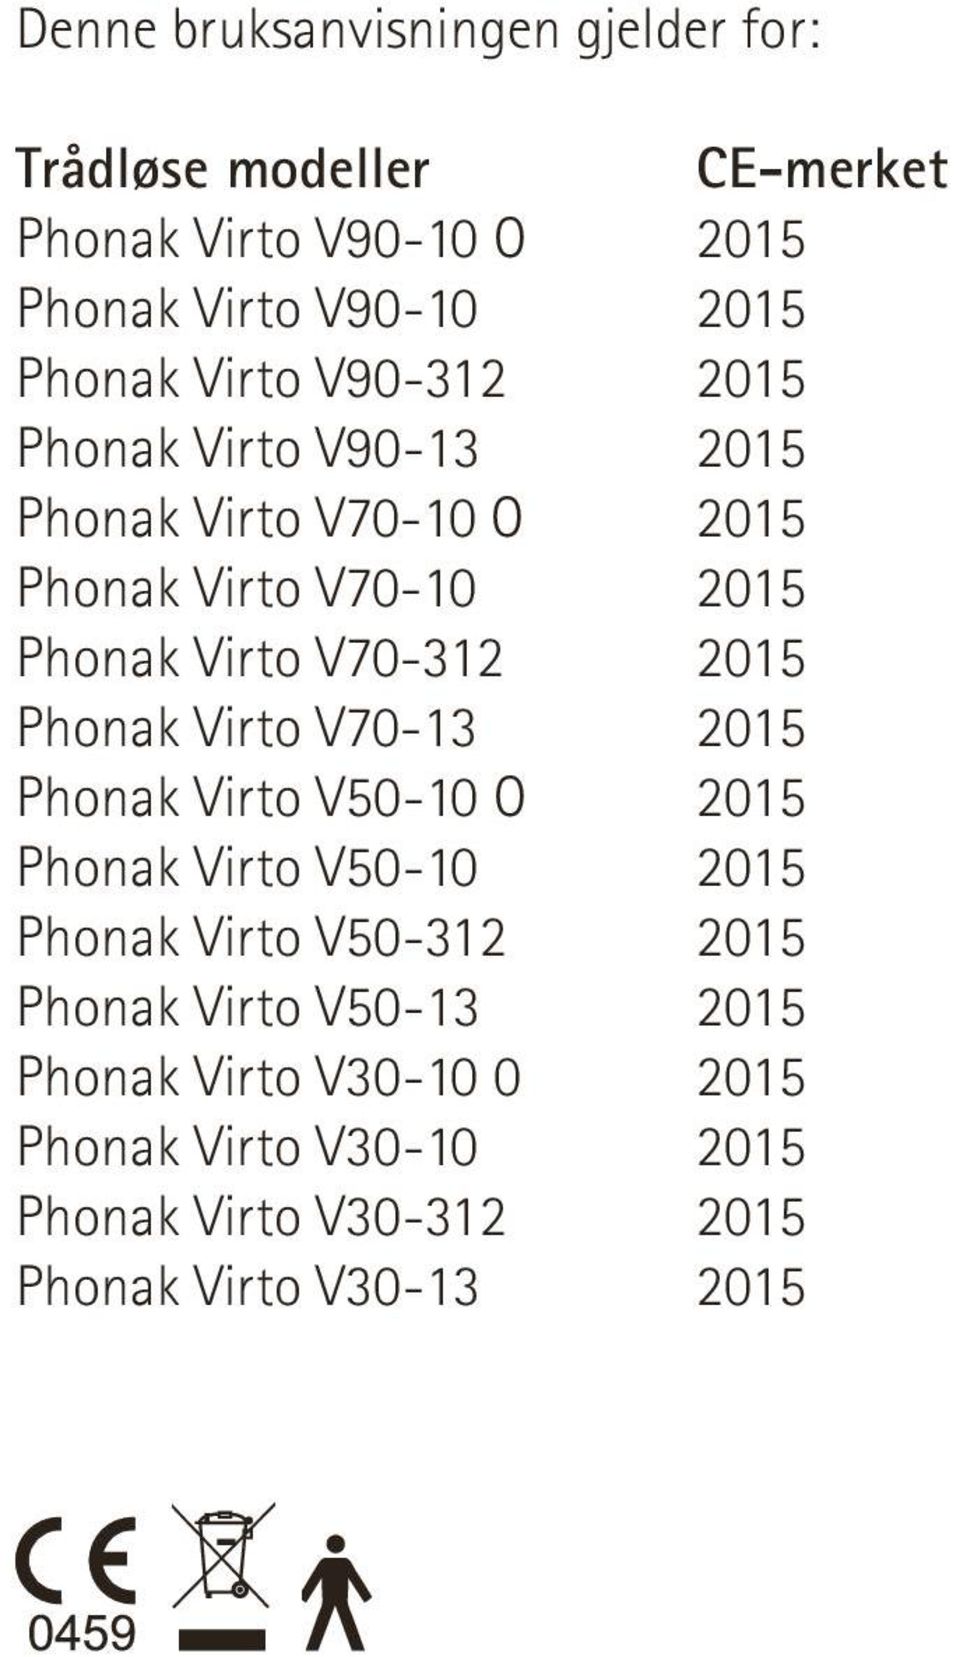 V50-10 O Phonak Virto V50-10 Phonak Virto V50-312 Phonak Virto V50-13 Phonak Virto V30-10 0 Phonak Virto V30-10 Phonak